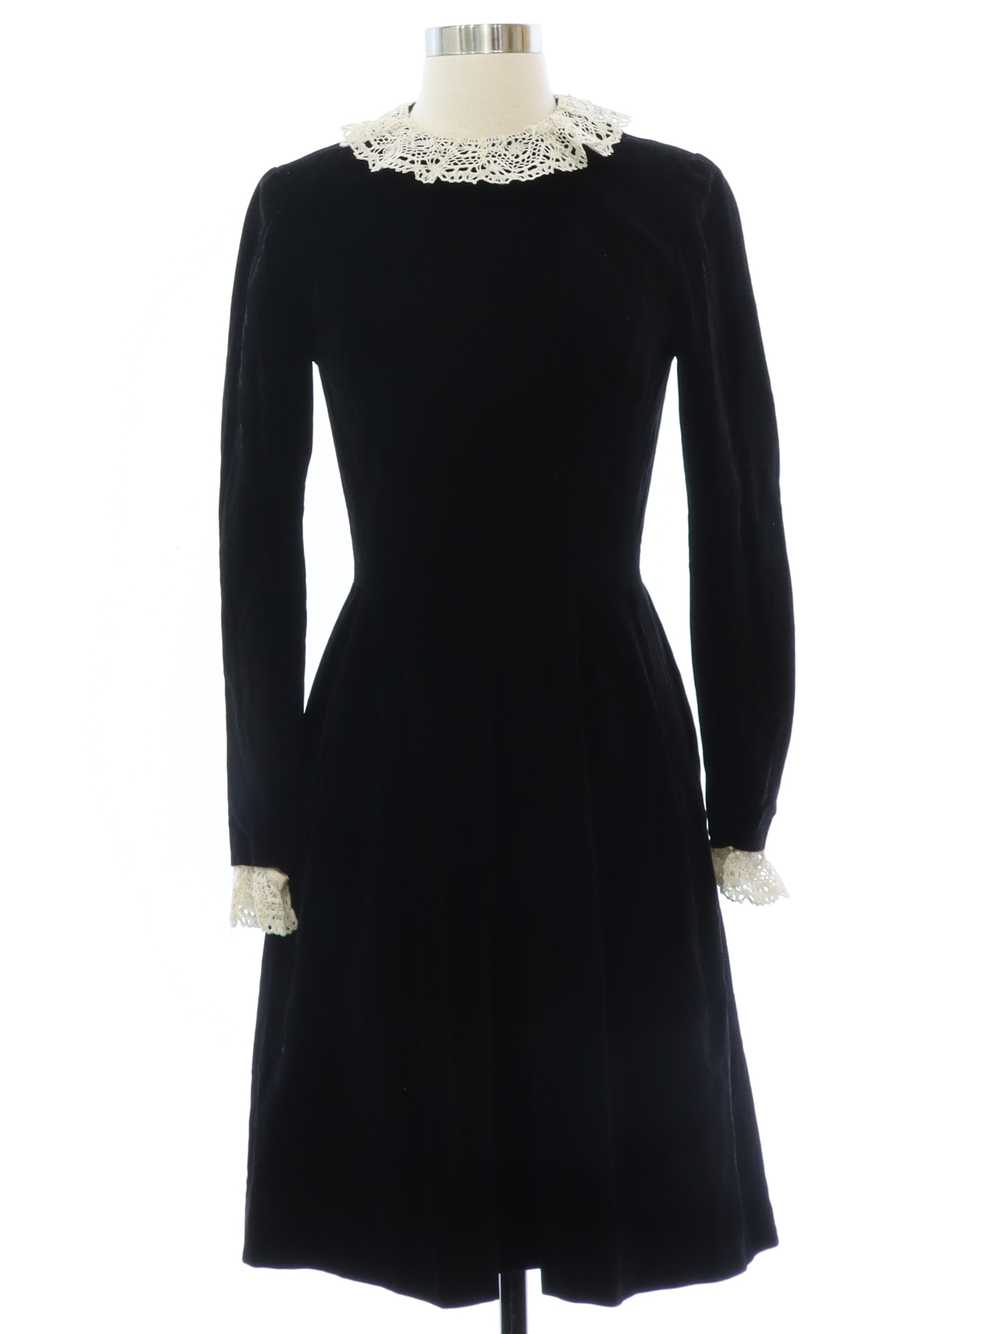 1960's Black Velveteen Dress - image 1